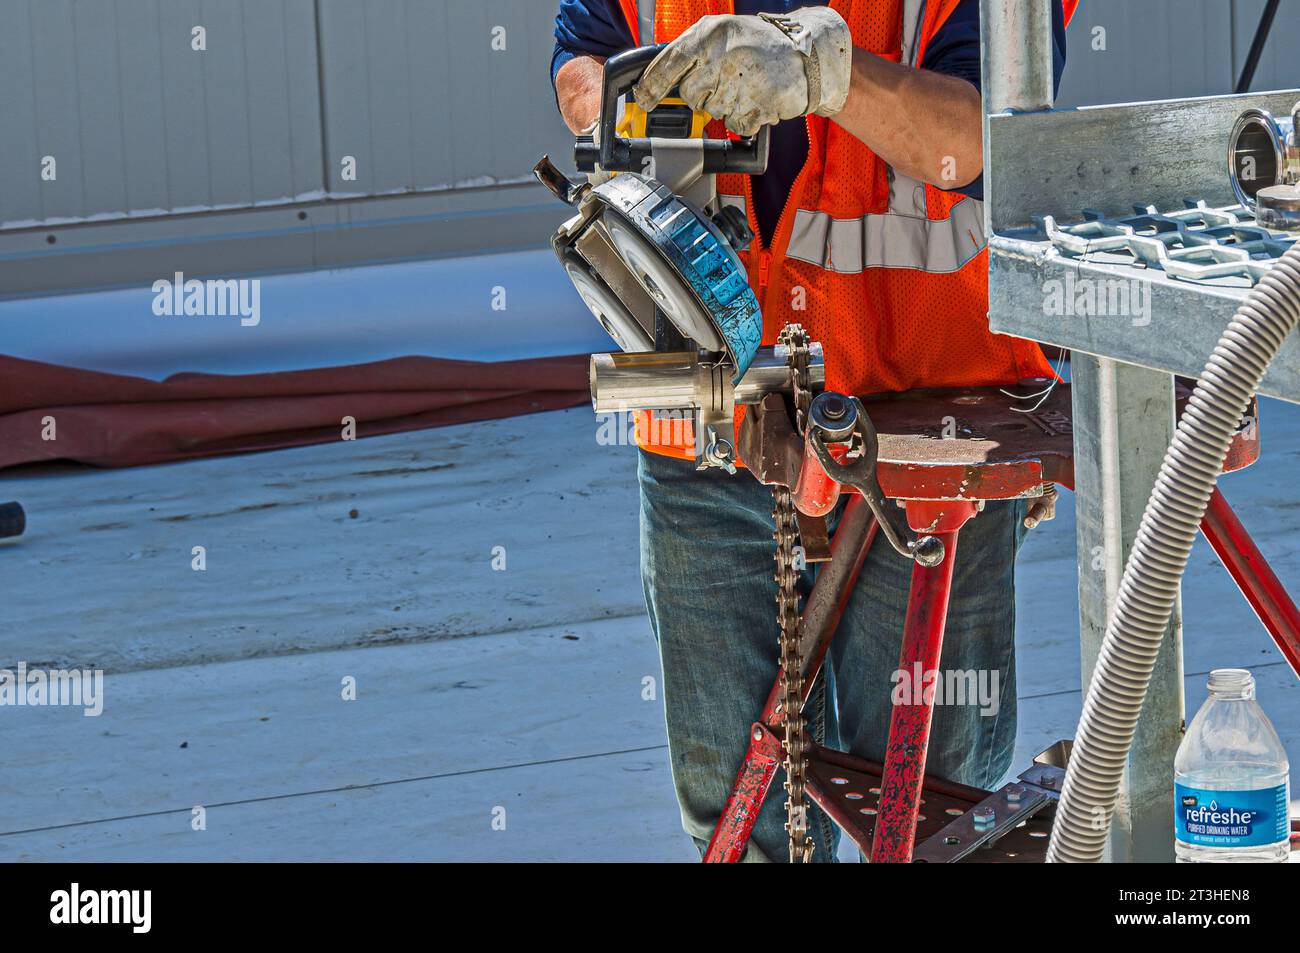 Un operaio edile utilizza una sega a nastro portatile per tagliare tubi in acciaio inox sul tetto di un impianto di refrigerazione industriale (stoccaggio a freddo). Foto Stock